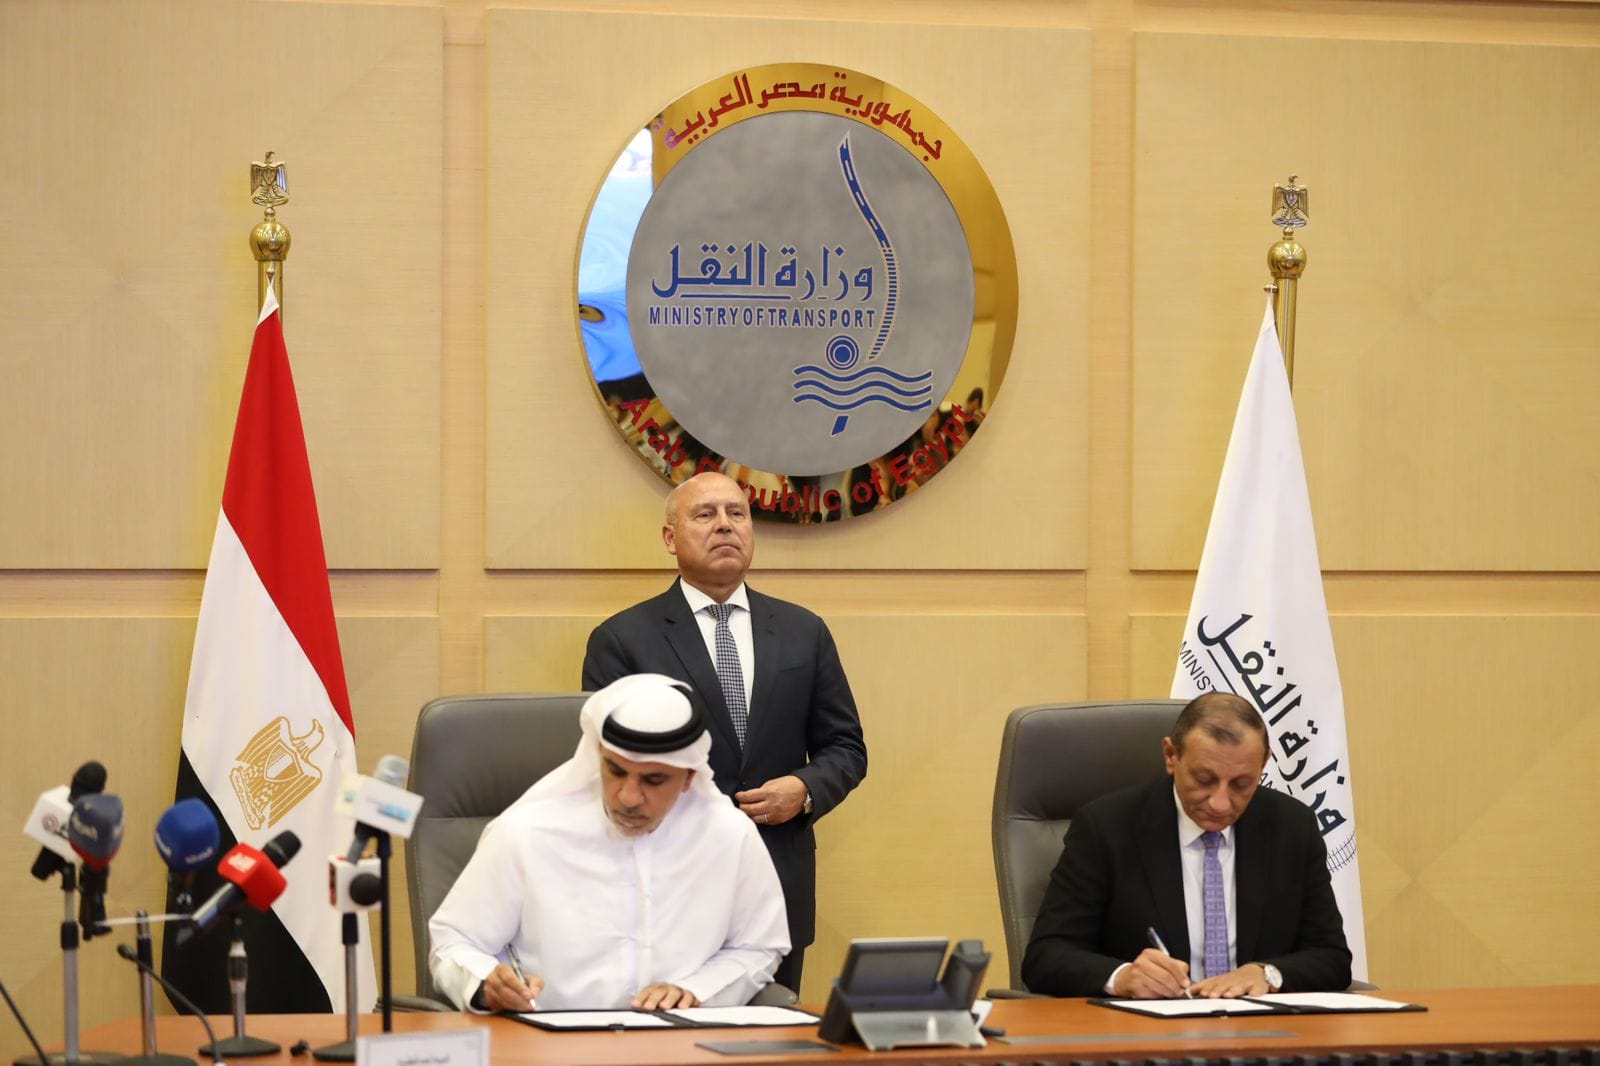 وزير النقل المصري يشهد توقيع العقد مع موانئ أبوظبي